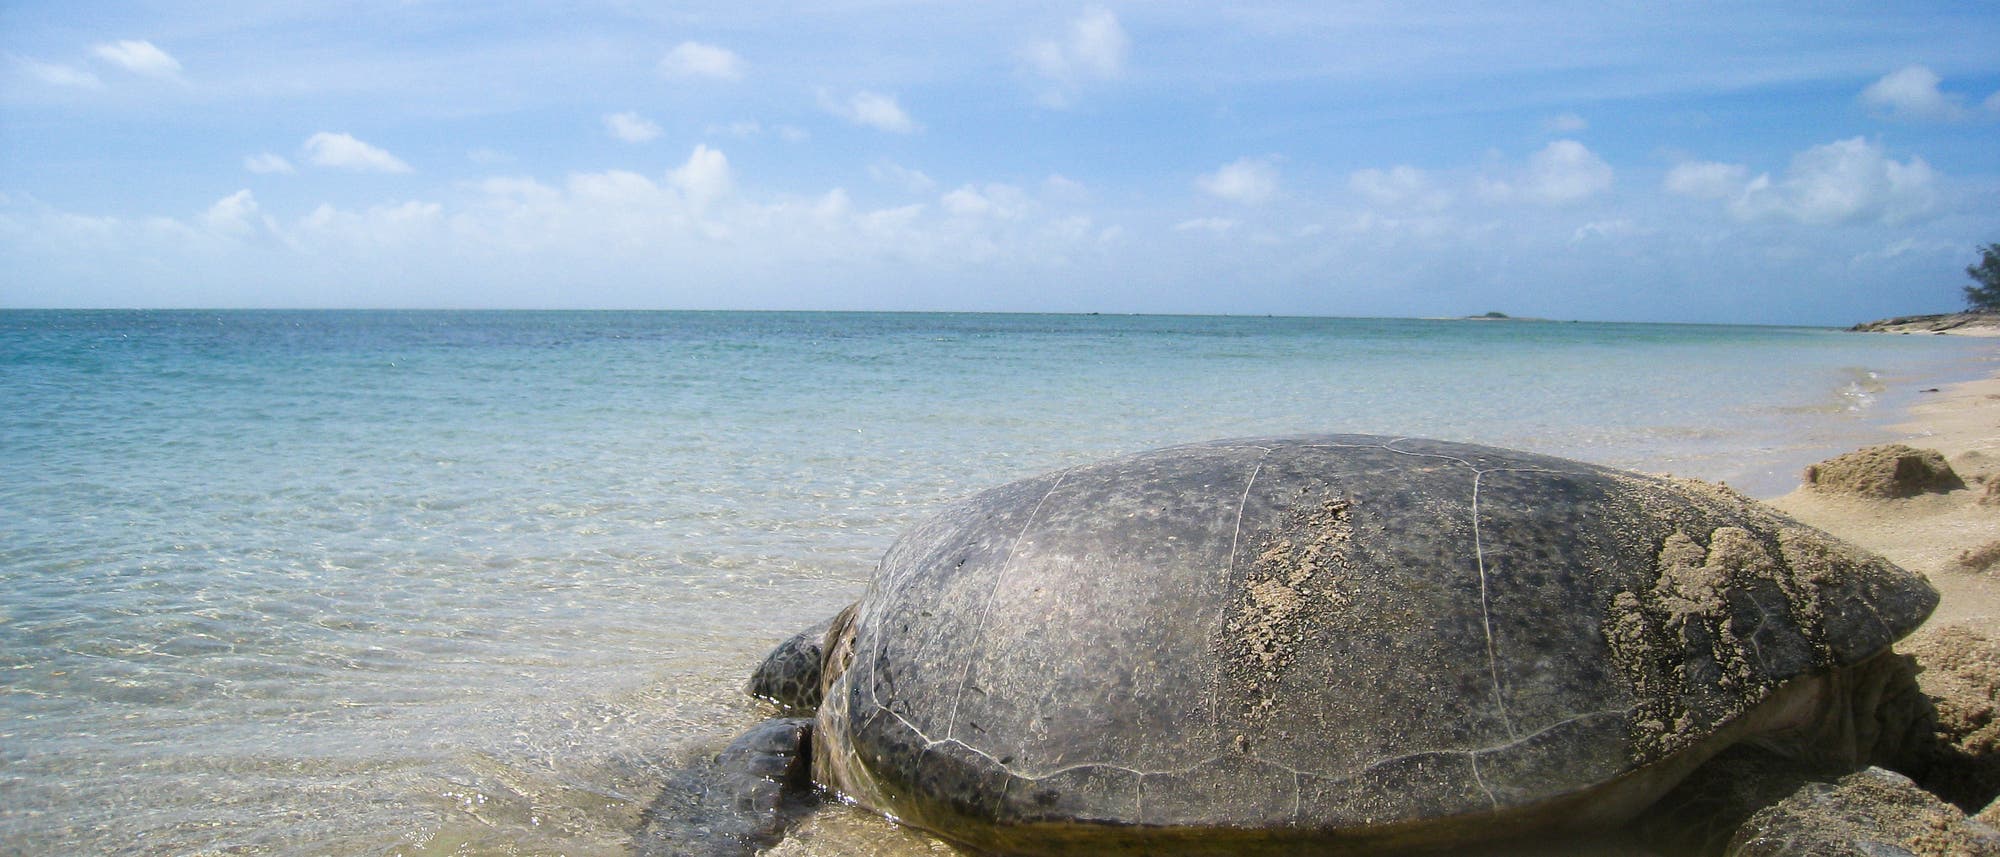 Eine Suppenschildkröte auf dem Weg ins Wasser